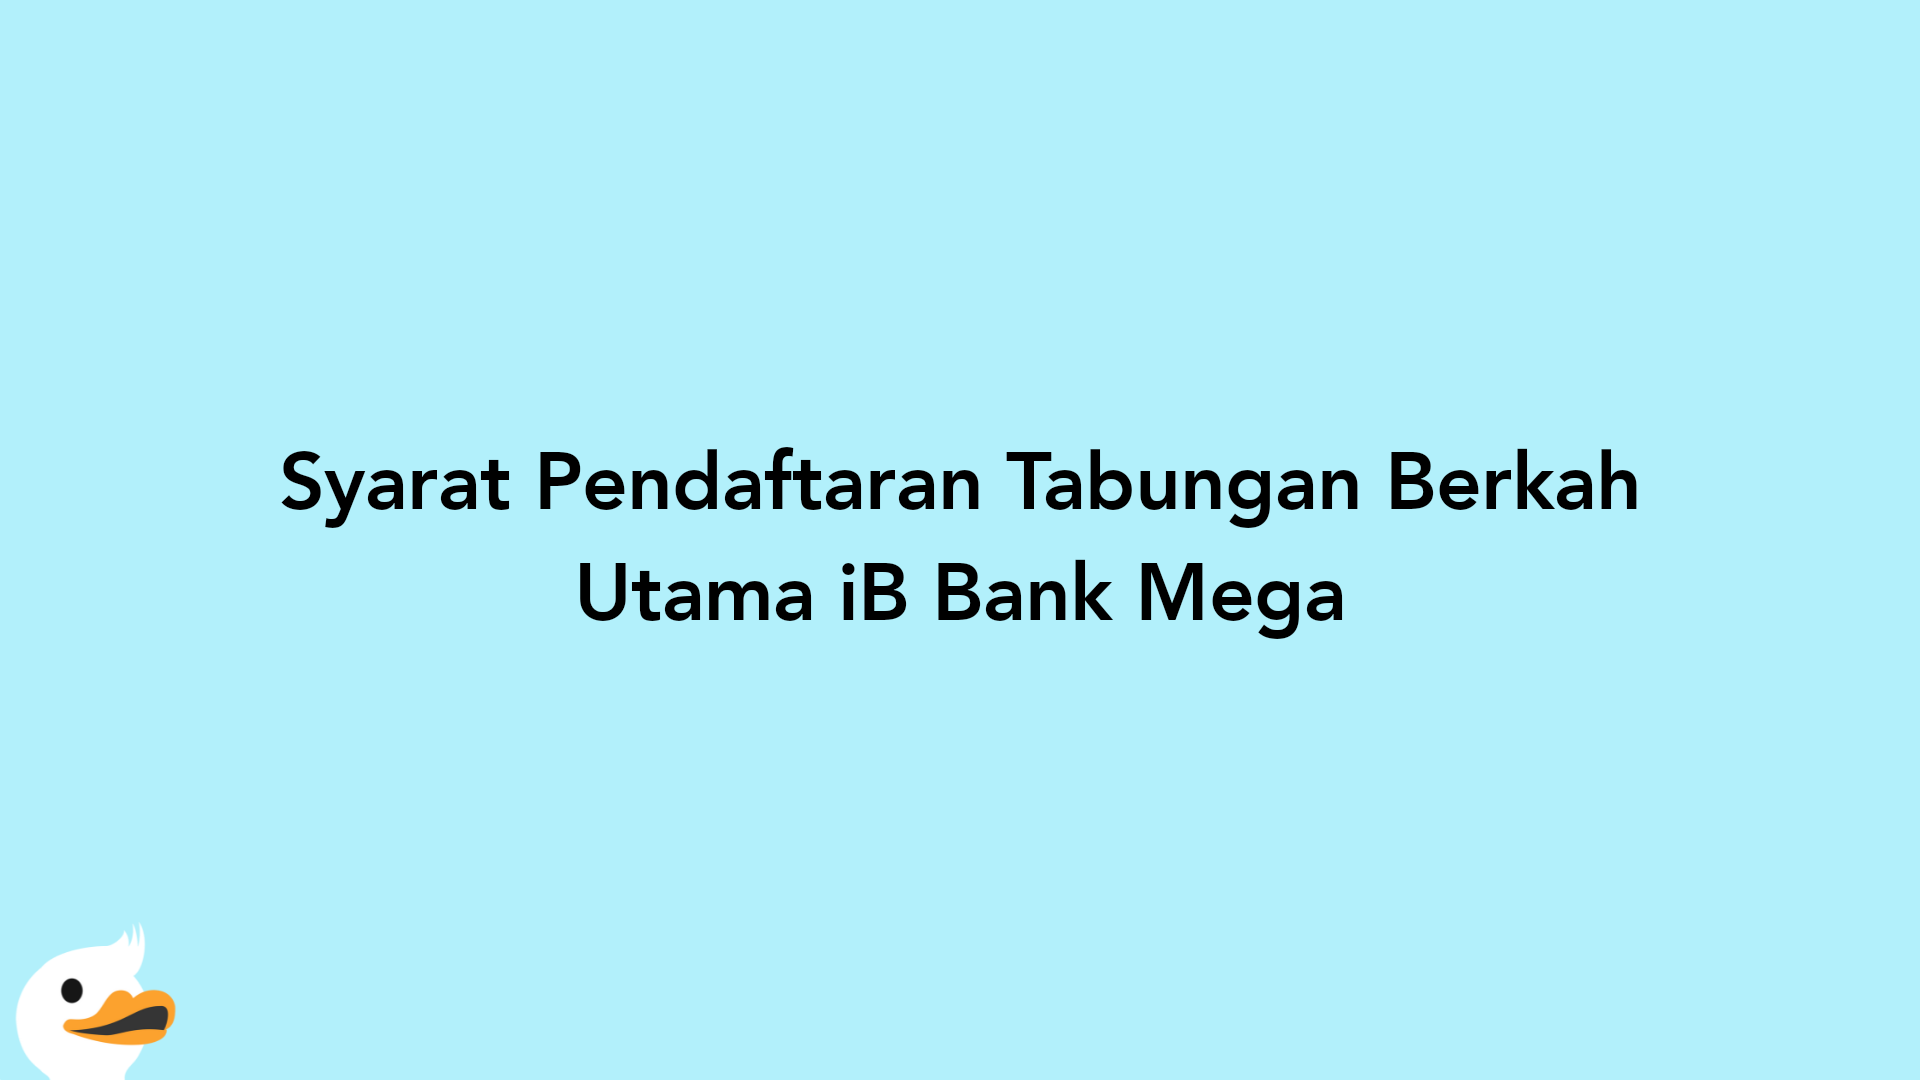 Syarat Pendaftaran Tabungan Berkah Utama iB Bank Mega